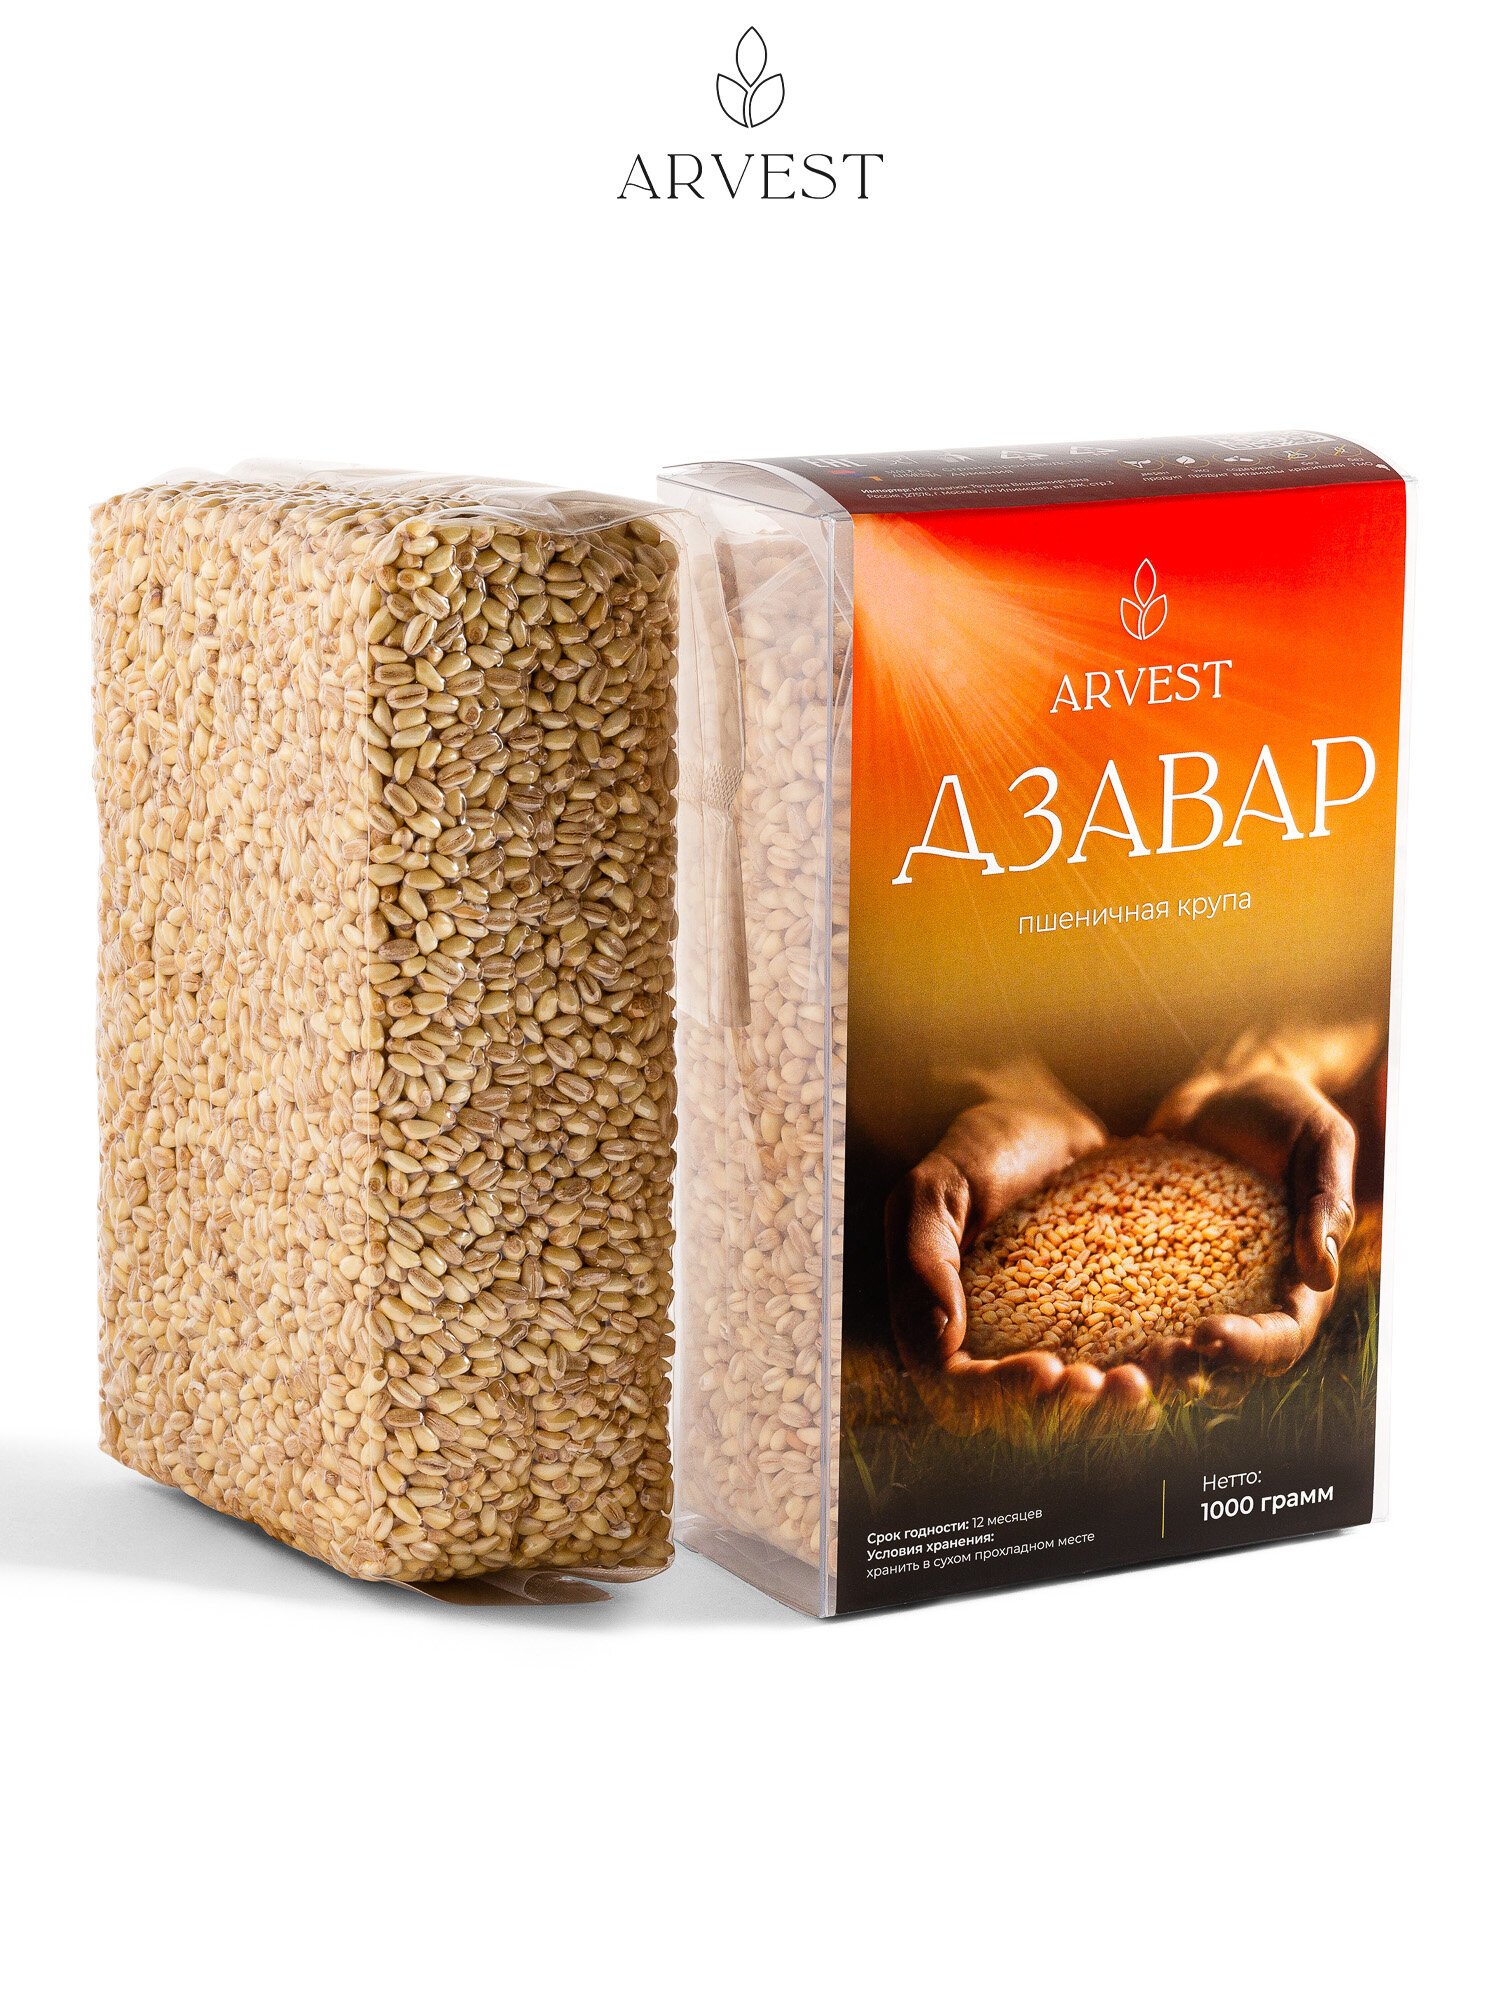 Дзавар "ARVEST" - Цельная Пшеничная Крупа, 1 кг.